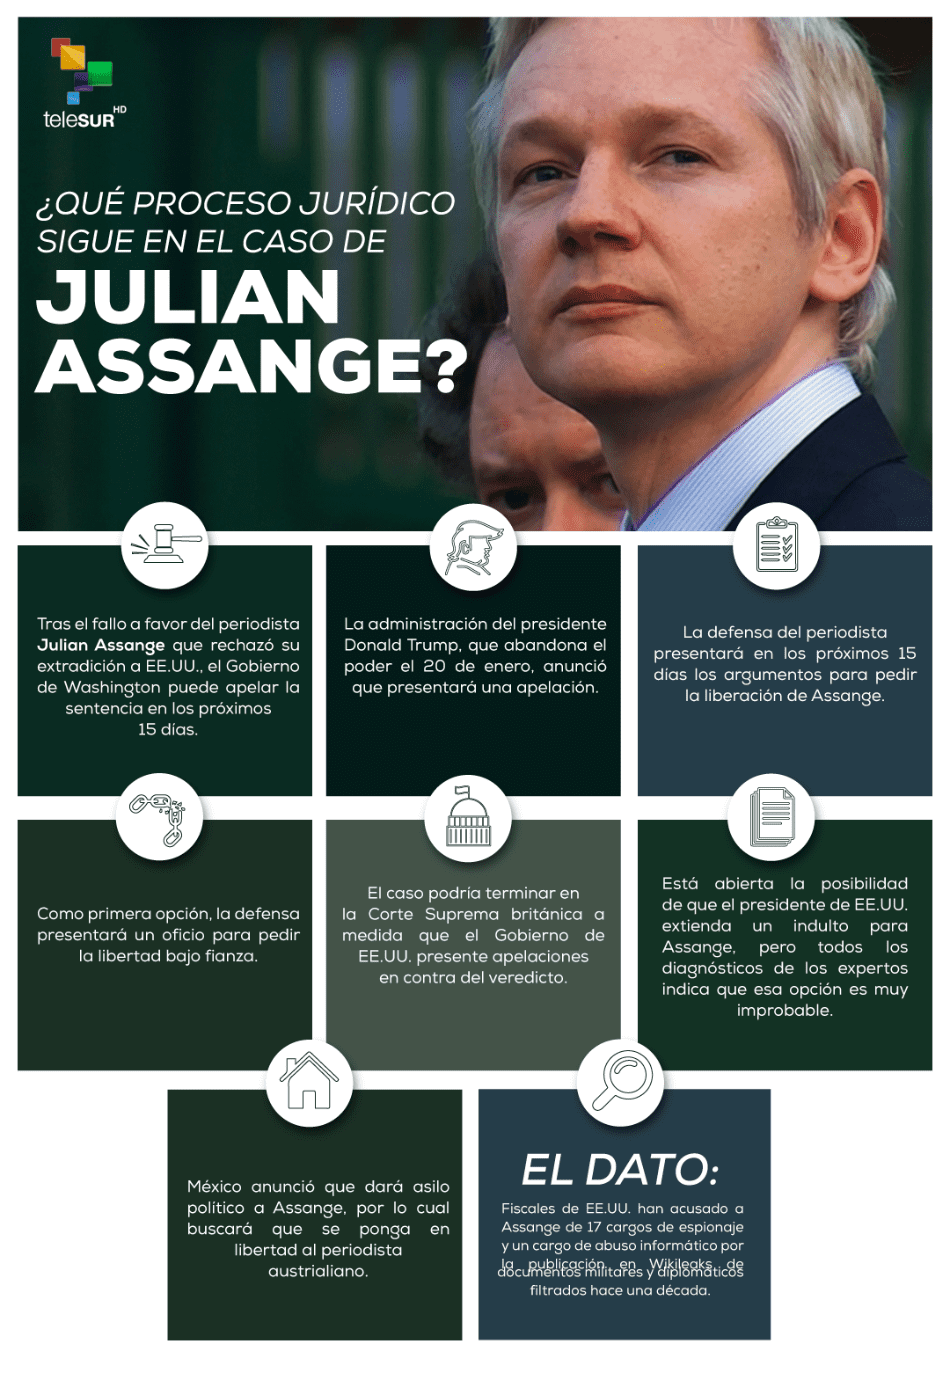 Lo que sigue en el proceso jurídico de Julian Assange